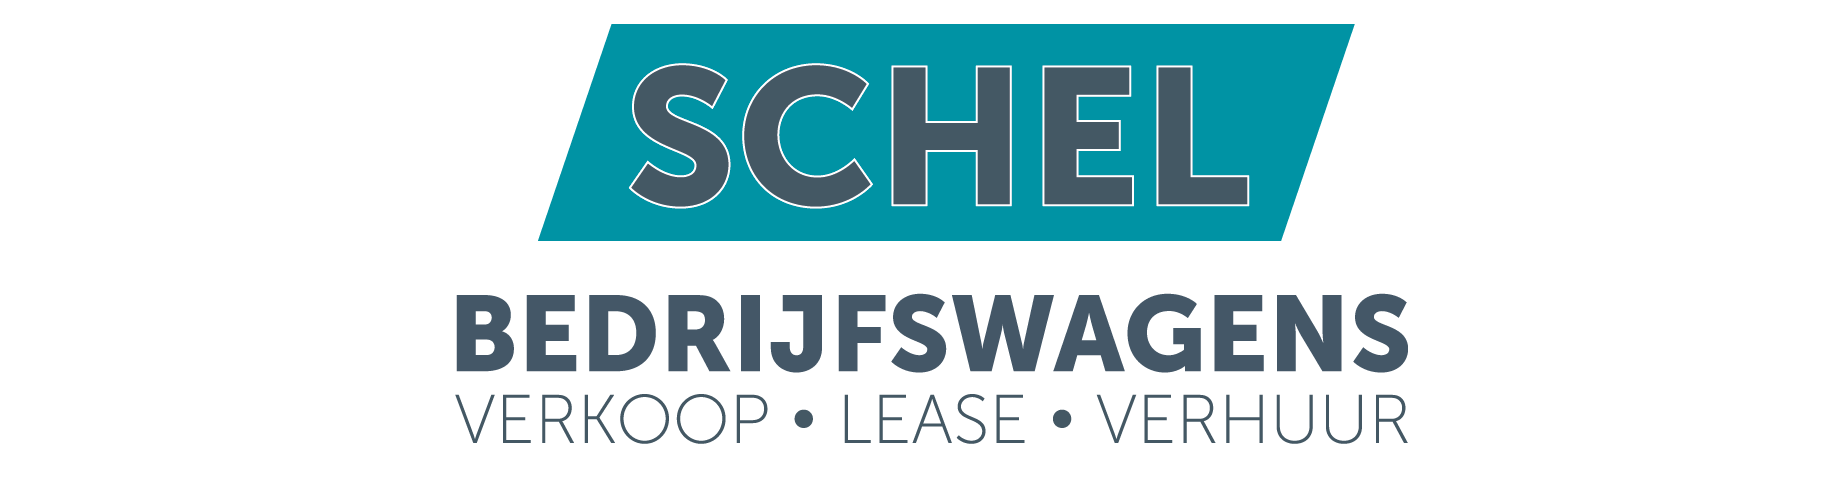 07. Schel logo bedrijfswagens